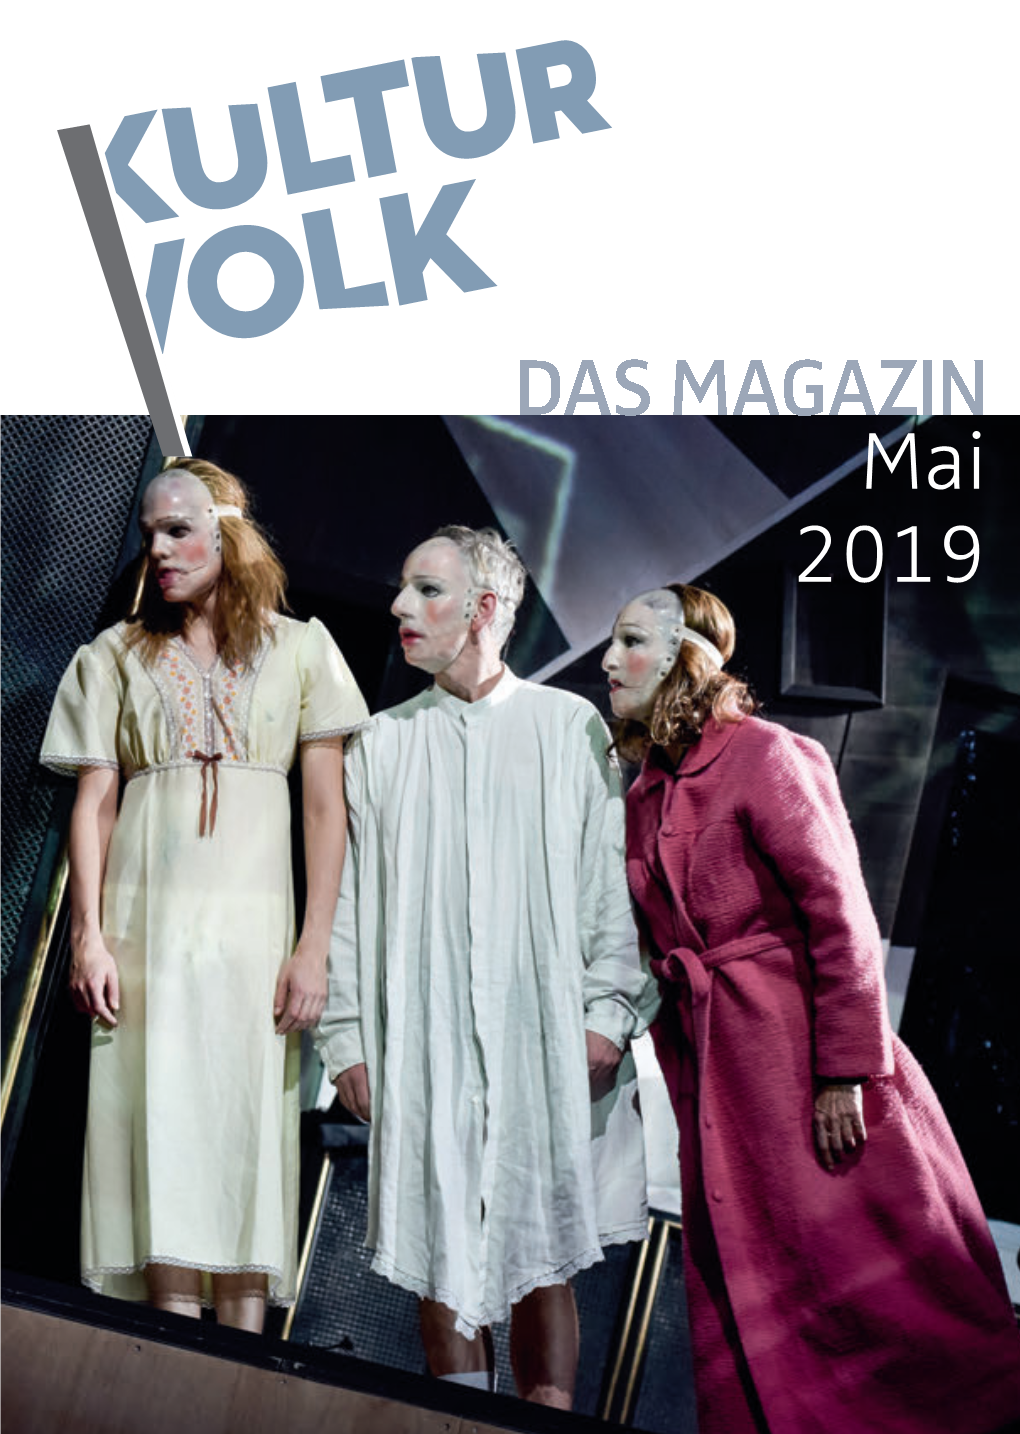 Mai 2019 Ihr Preisvorteil - Unsere Sonderangebote! Deutsche Oper Berlin Schlosspark Theater Der Fliegende Holländer Mörder Und Mörderinnen Do 09.05.2019 32,00 € Mo 27